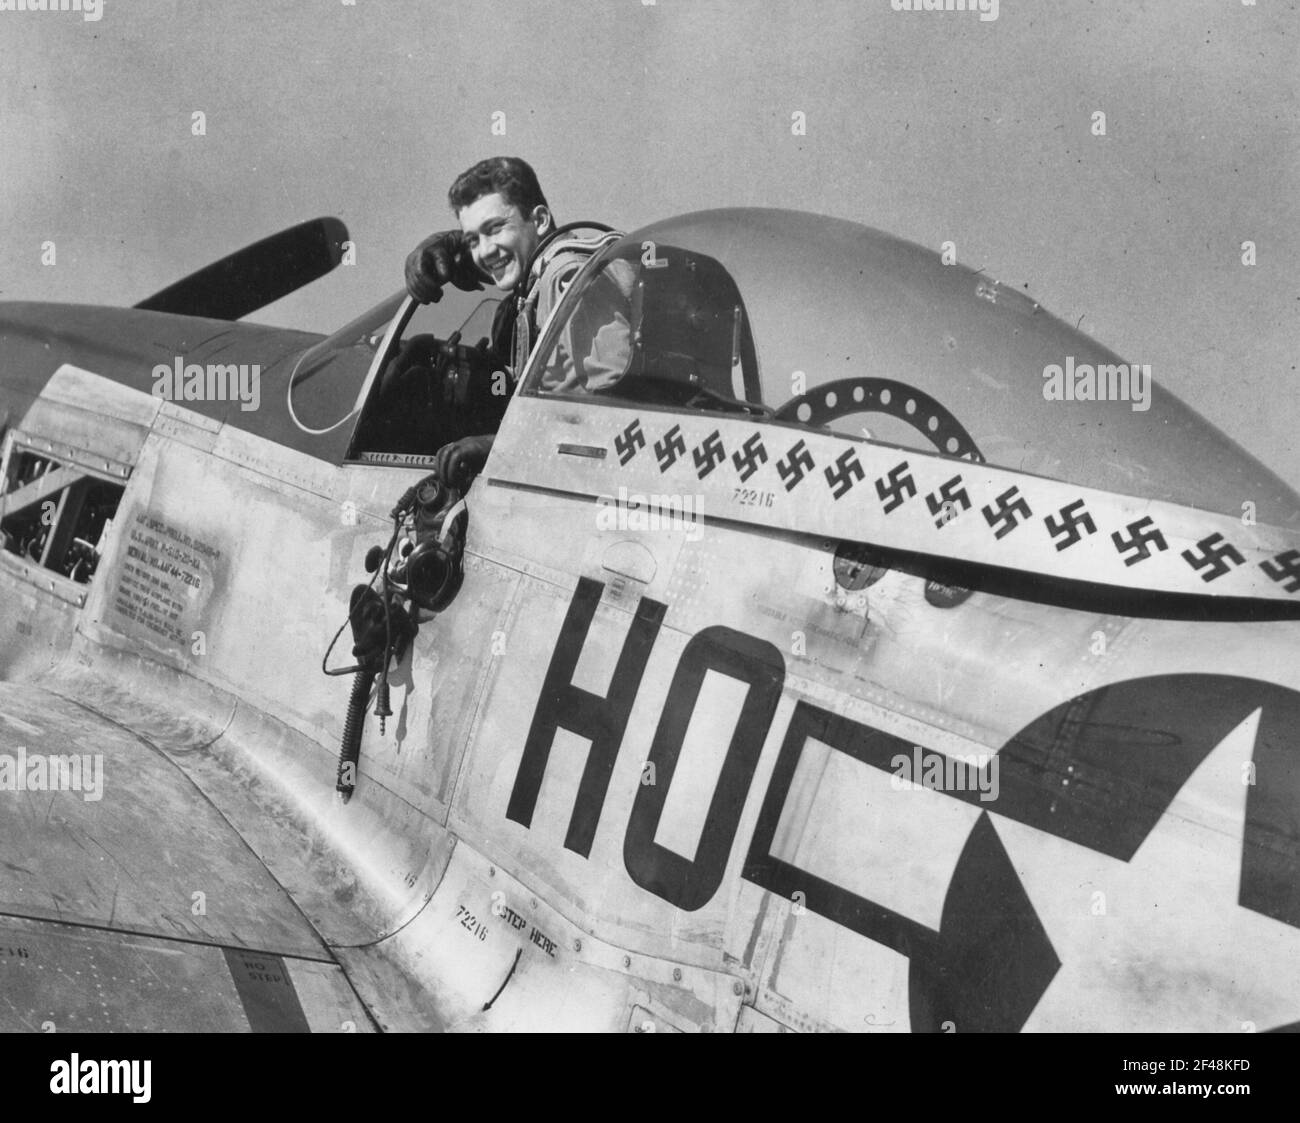 Inglaterra - el capitán Raymond H. Littge, de Altenburg, Missouri, llevó su puntuación a 23 1/2 aviones alemanes destruidos (10 1/2 en el aire, 13 tierra) al agregar nueve muertes de tierra a su récord en dos días de campo de jaquetón. El 352nd años de edad 21 norteamericano P-51 Mustang Foto de stock